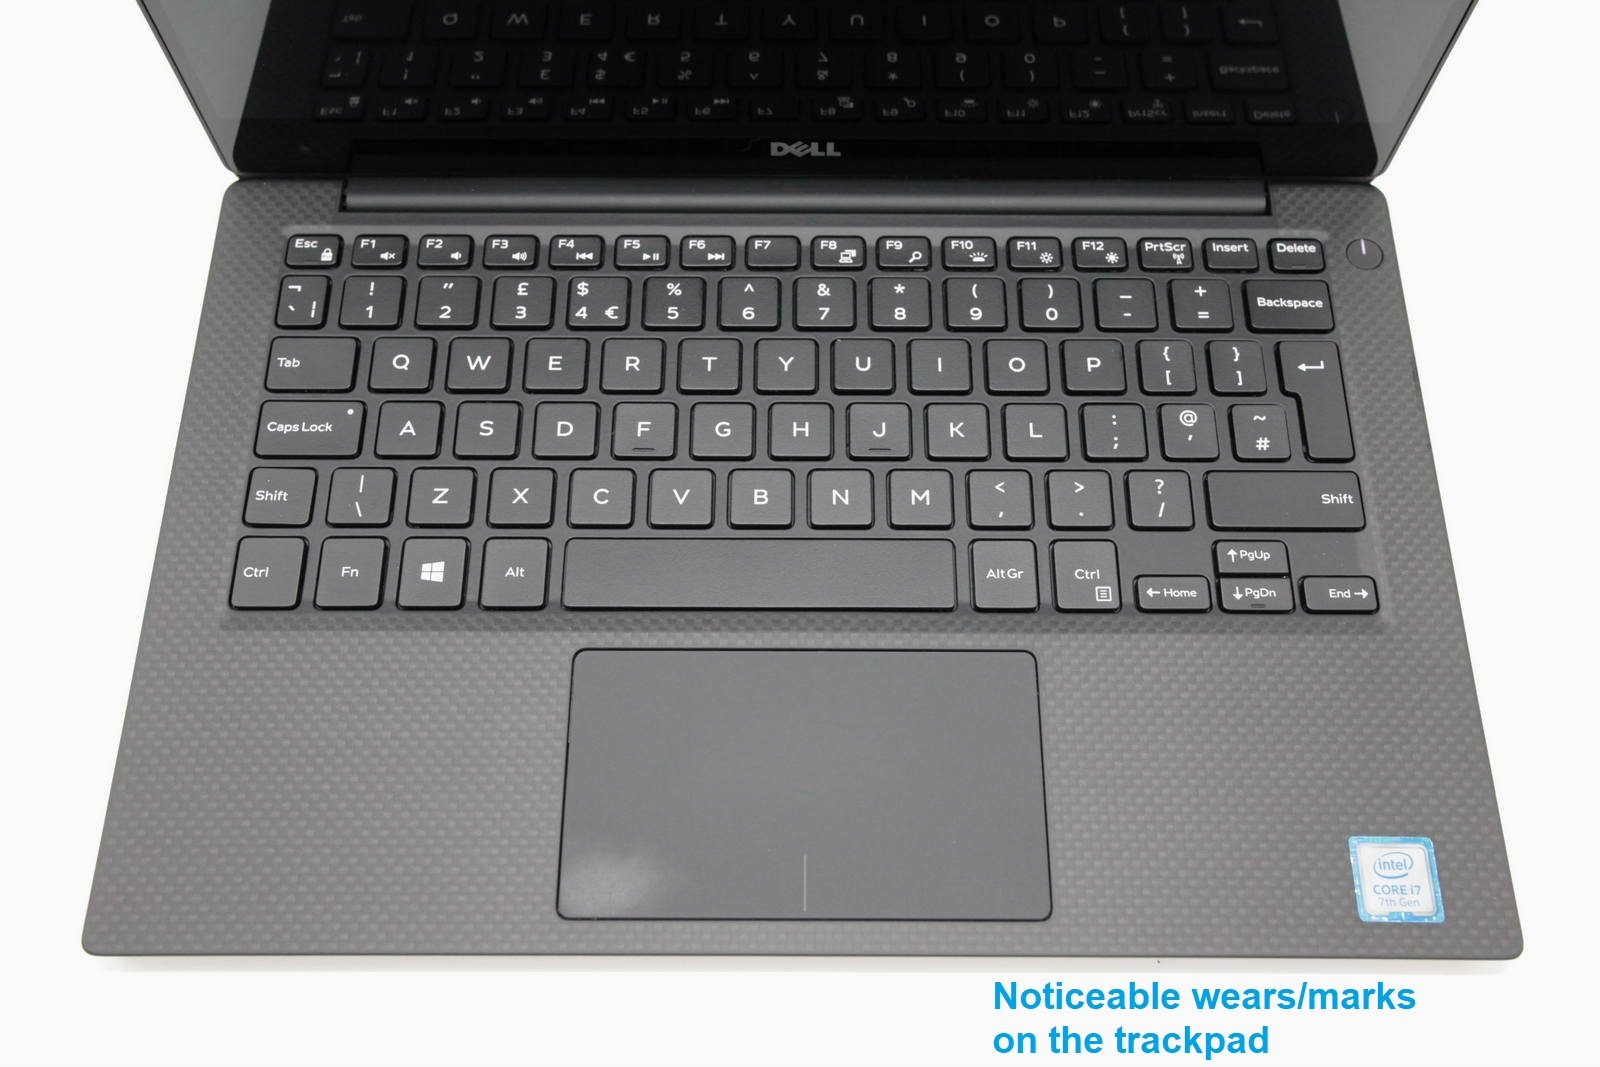 Dell XPS 13 9360 Laptop: Intel Core i7 7th Gen, 256GB SSD, 8GB RAM, Warranty - CruiseTech